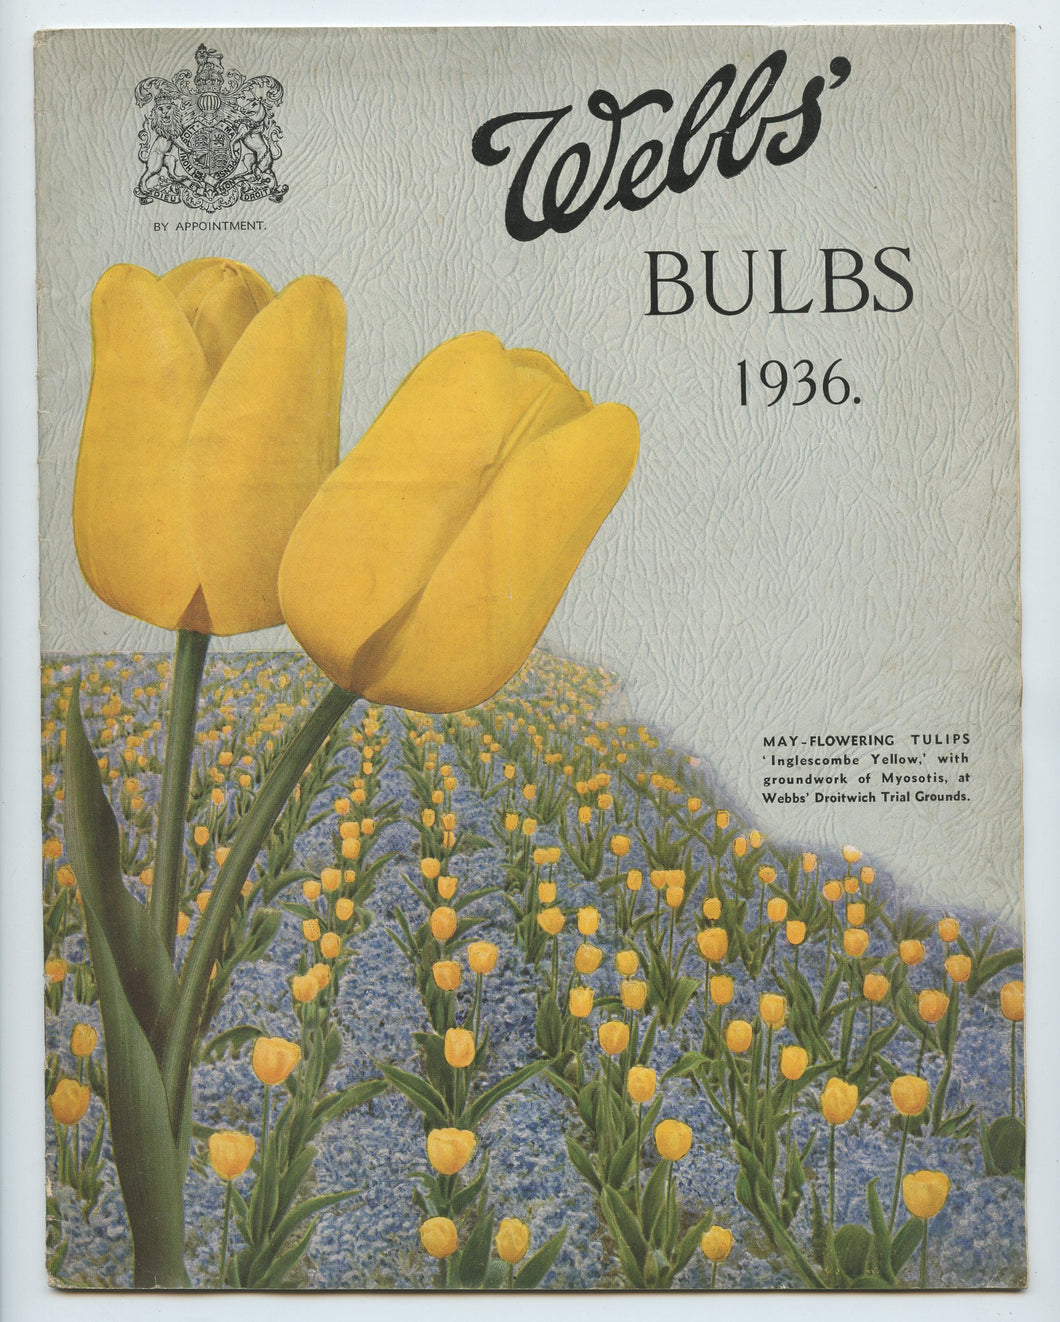 Webbs' Bulbs 1936